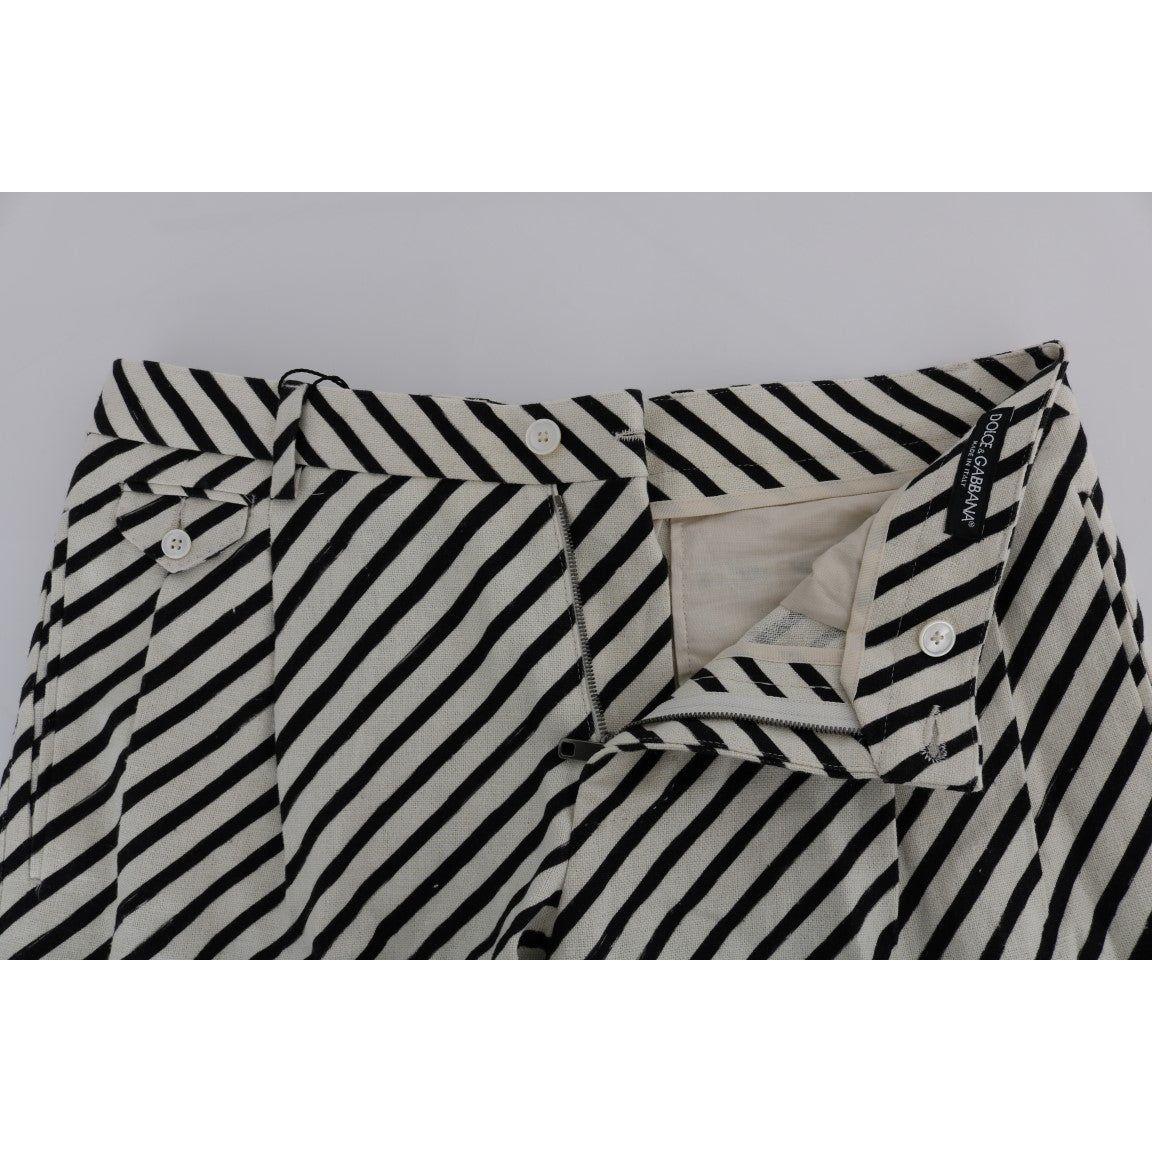 Dolce & Gabbana Striped Hemp Casual Shorts white-black-striped-hemp-casual-shorts 443695-white-black-striped-hemp-casual-shorts-3.jpg